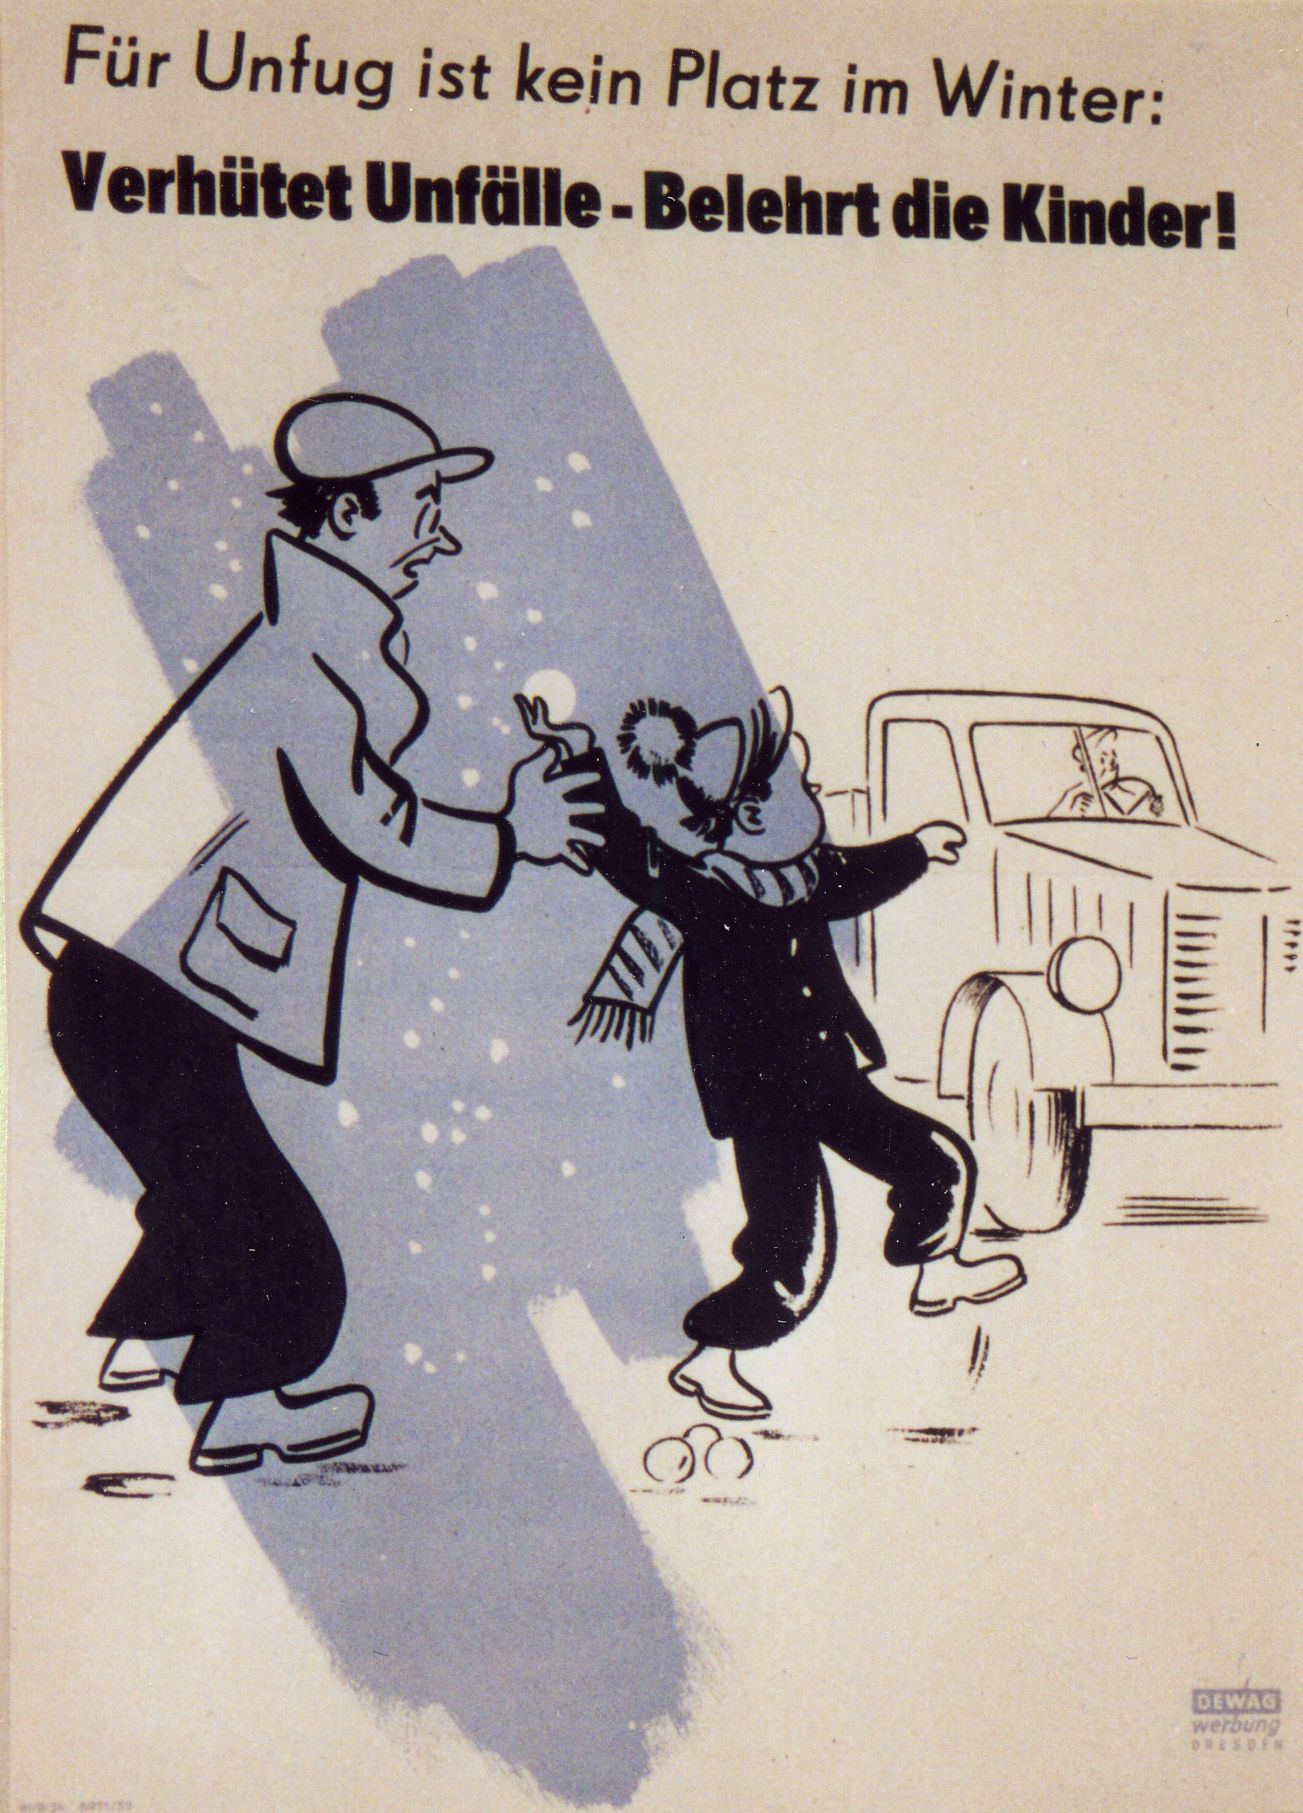 Für Unfug ist kein Platz im Winter: Verhütet Unfälle - Belehrt die Kinder!, 1953